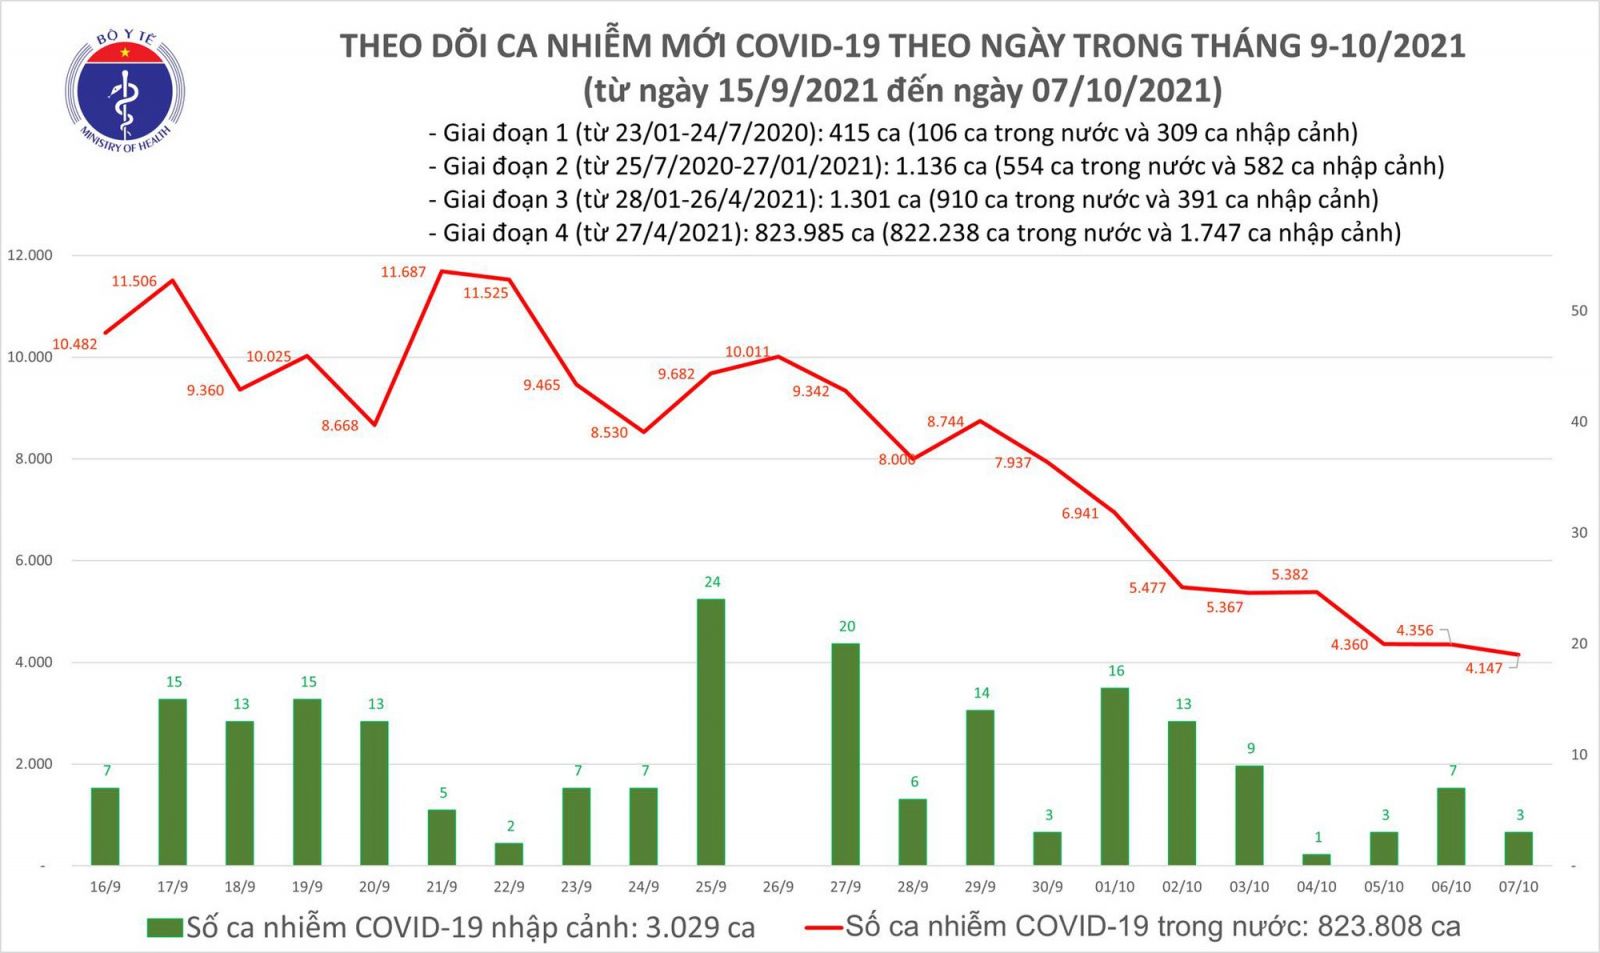 Hôm nay, có 4.150 ca mắc COVID-19, giảm hơn 200 ca so với hôm qua